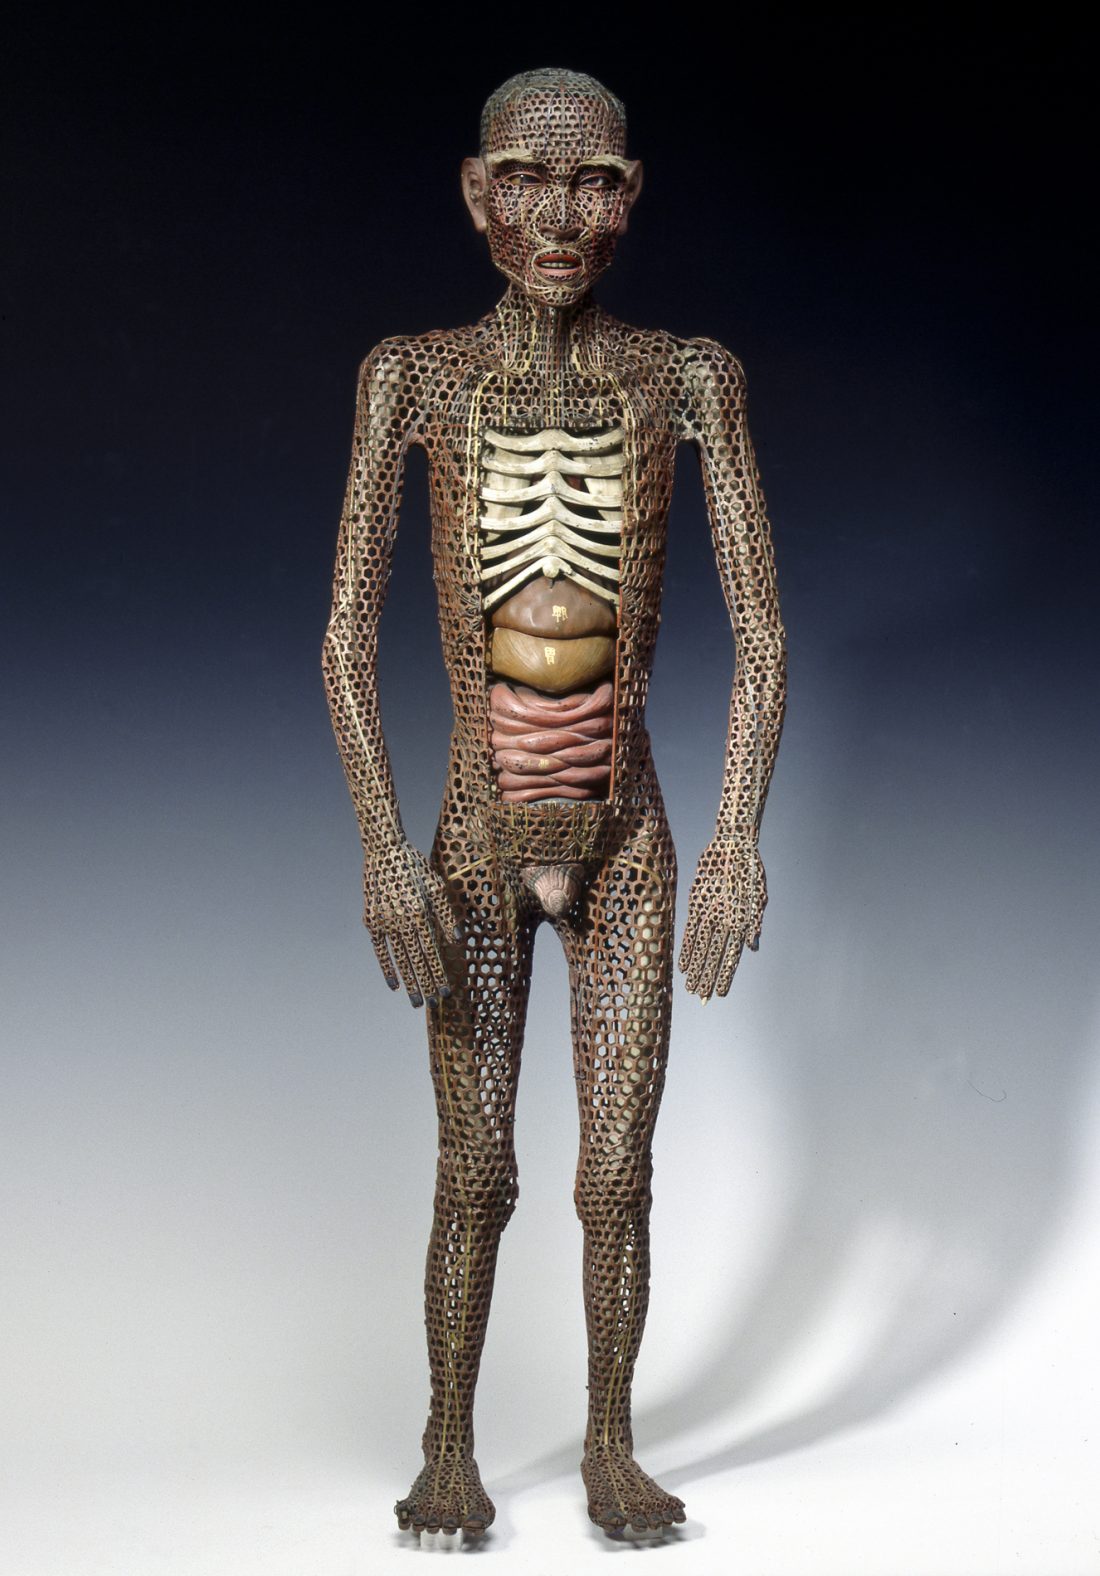 Medical doll, anatomy, organs